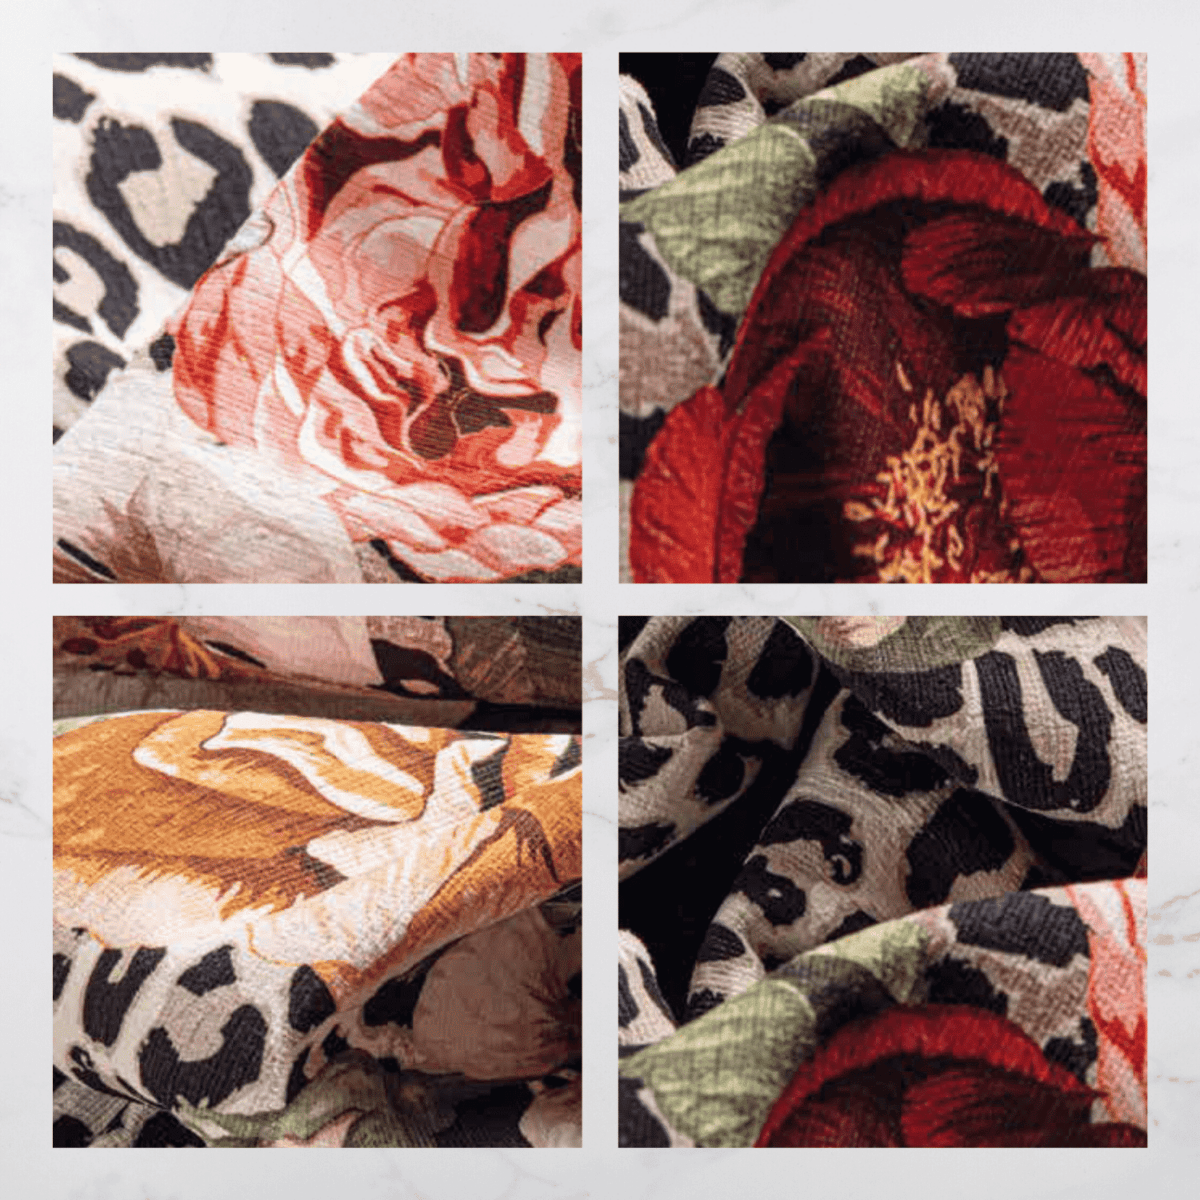 frida-tappeto-arredo-emozioni-artista-scuro-fiorato-multicolor-leopardato-dettagli